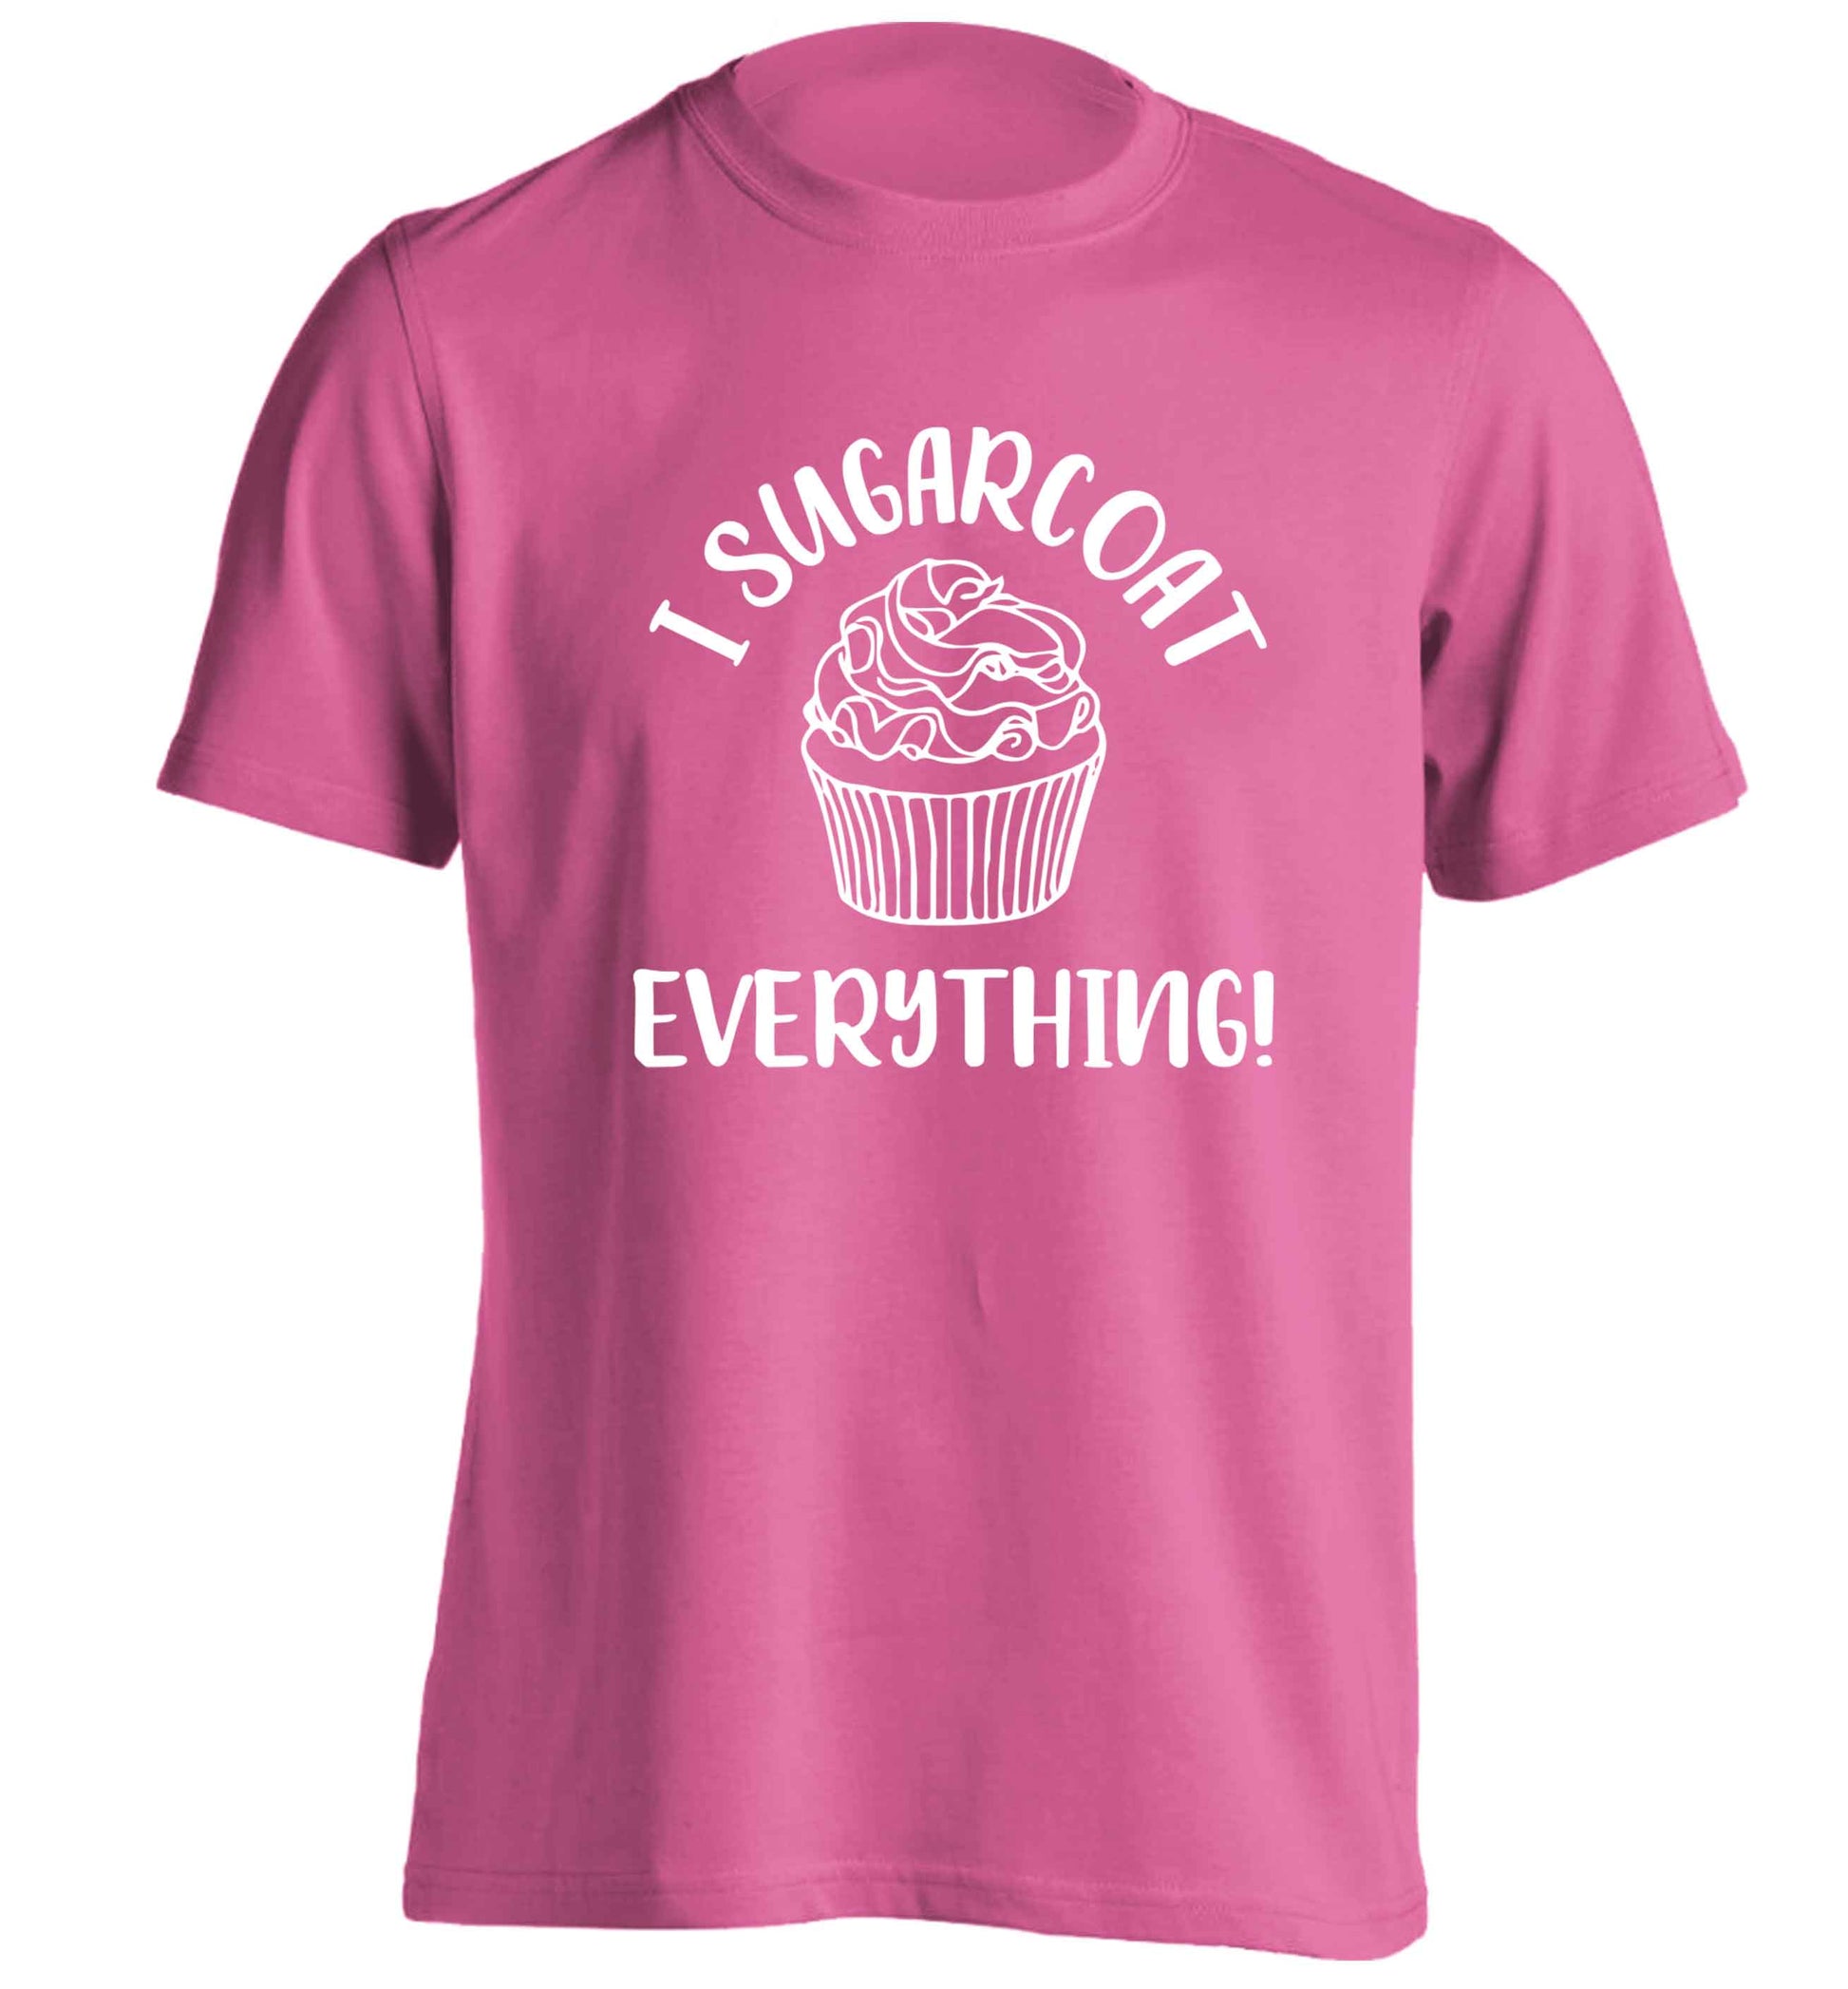 I sugarcoat everything adults unisex pink Tshirt 2XL